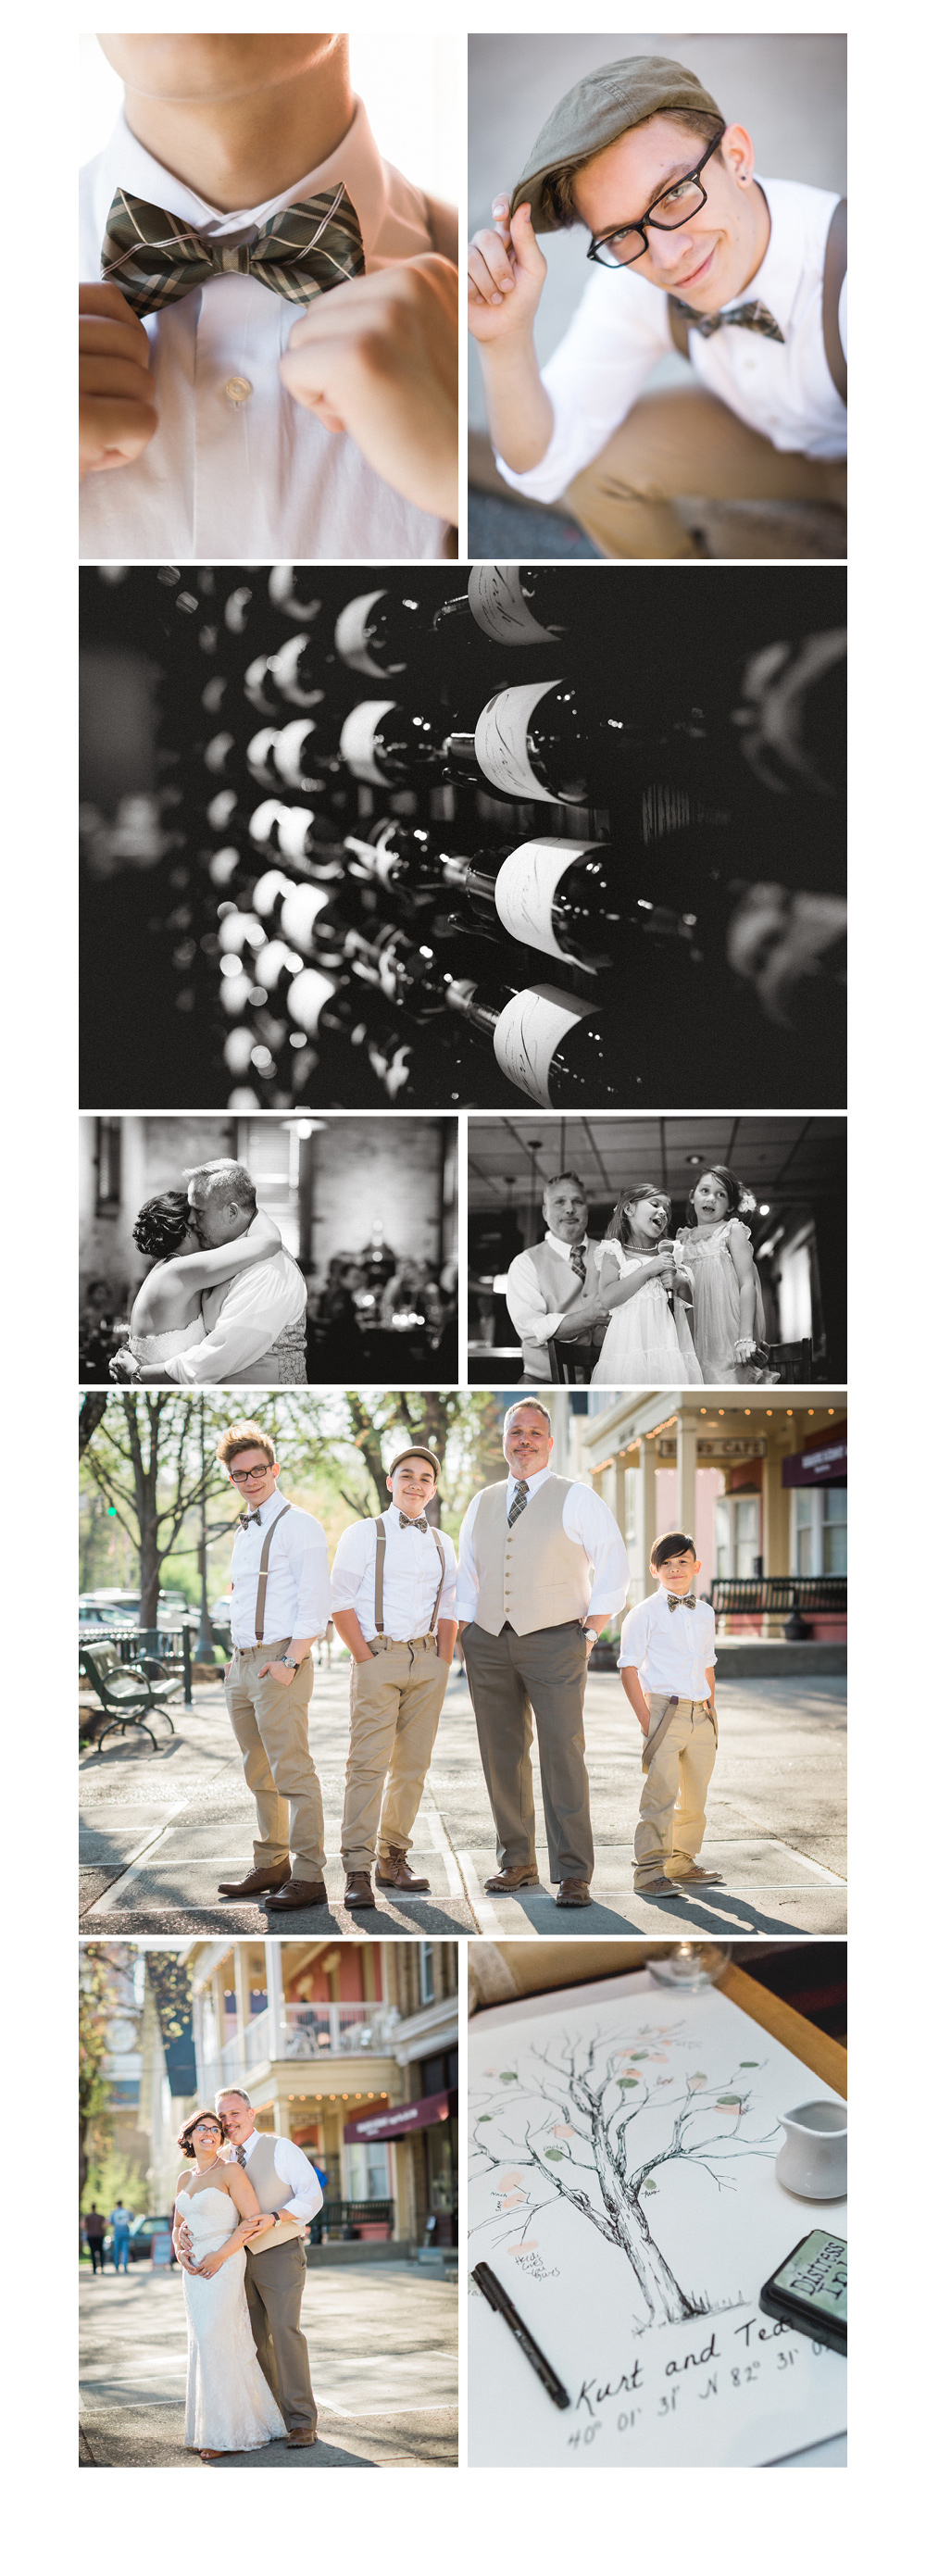 Wedding Photography Blog Image